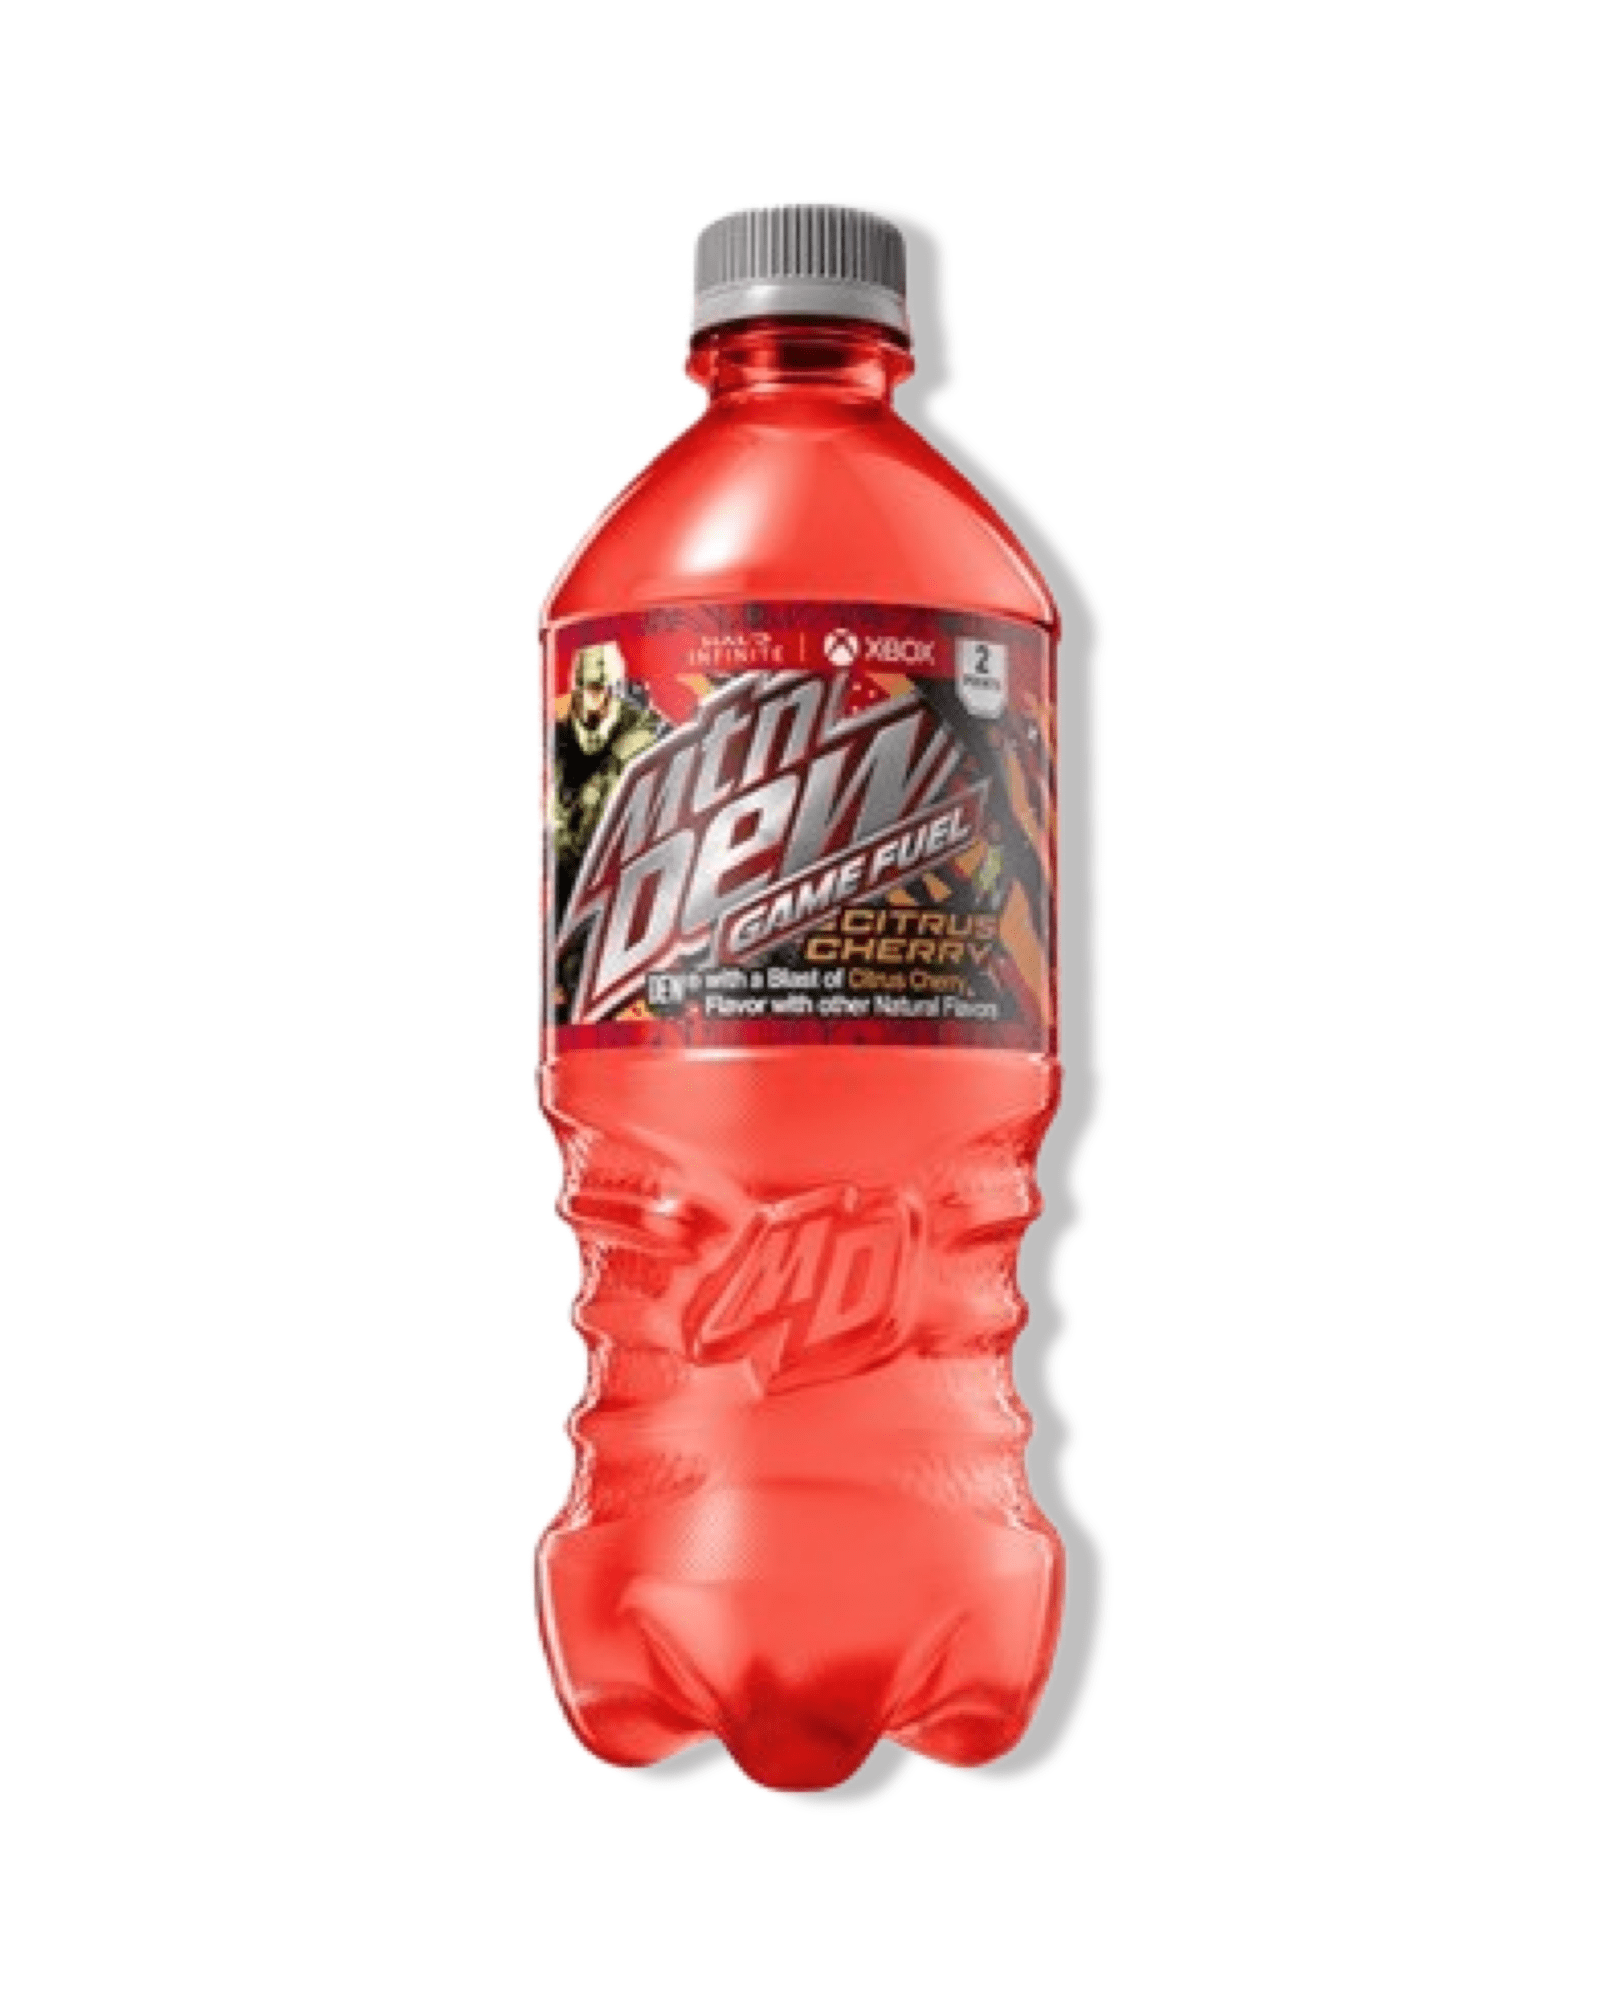 Mtn Dew Game Fuel “Citrus Cherry” (Rare American) - Exotic Soda Company